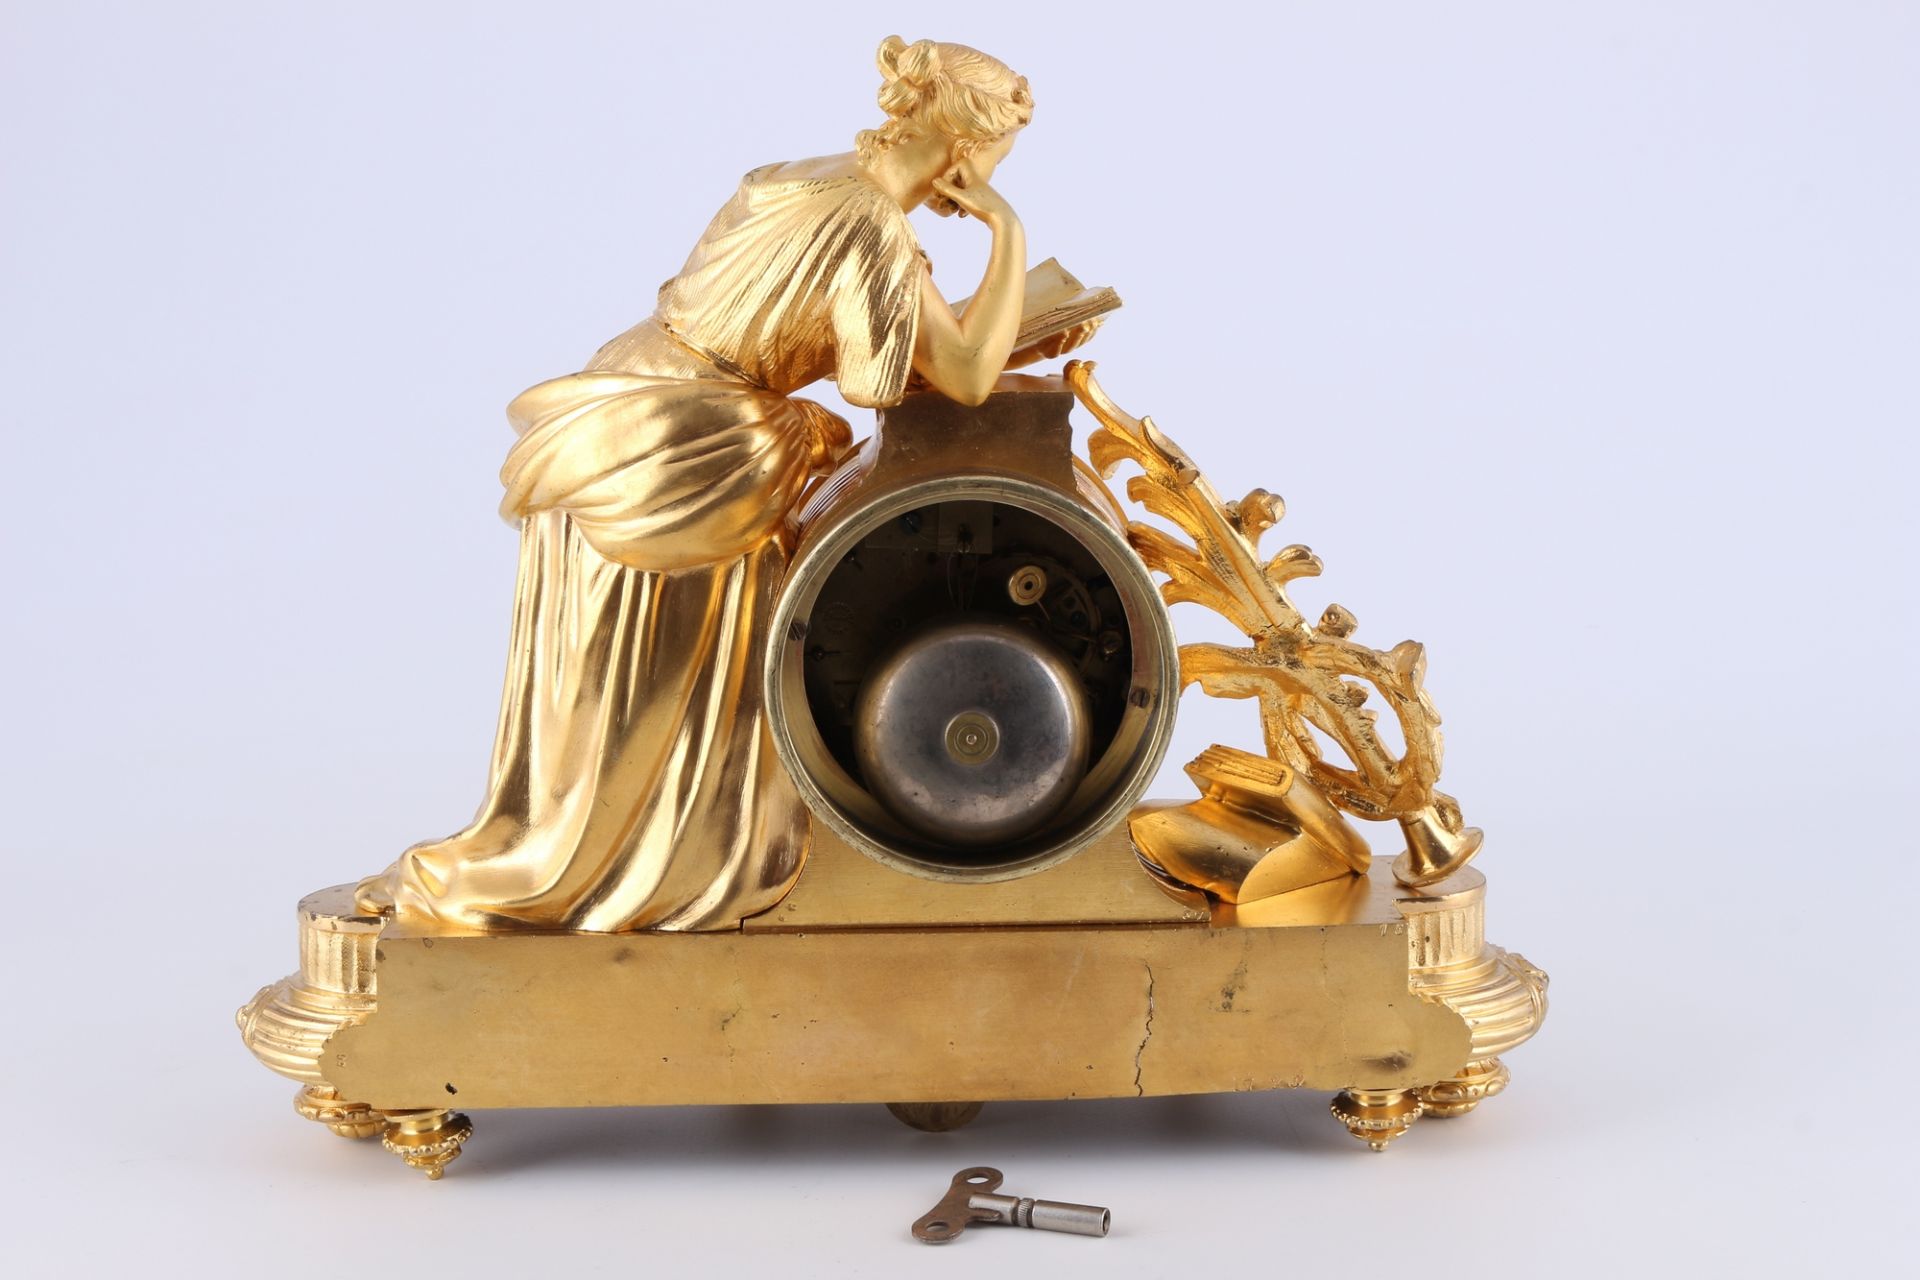 Kaminuhr Bronze 19. Jahrhundert, french bonze mantel clock 19th century, - Bild 5 aus 5